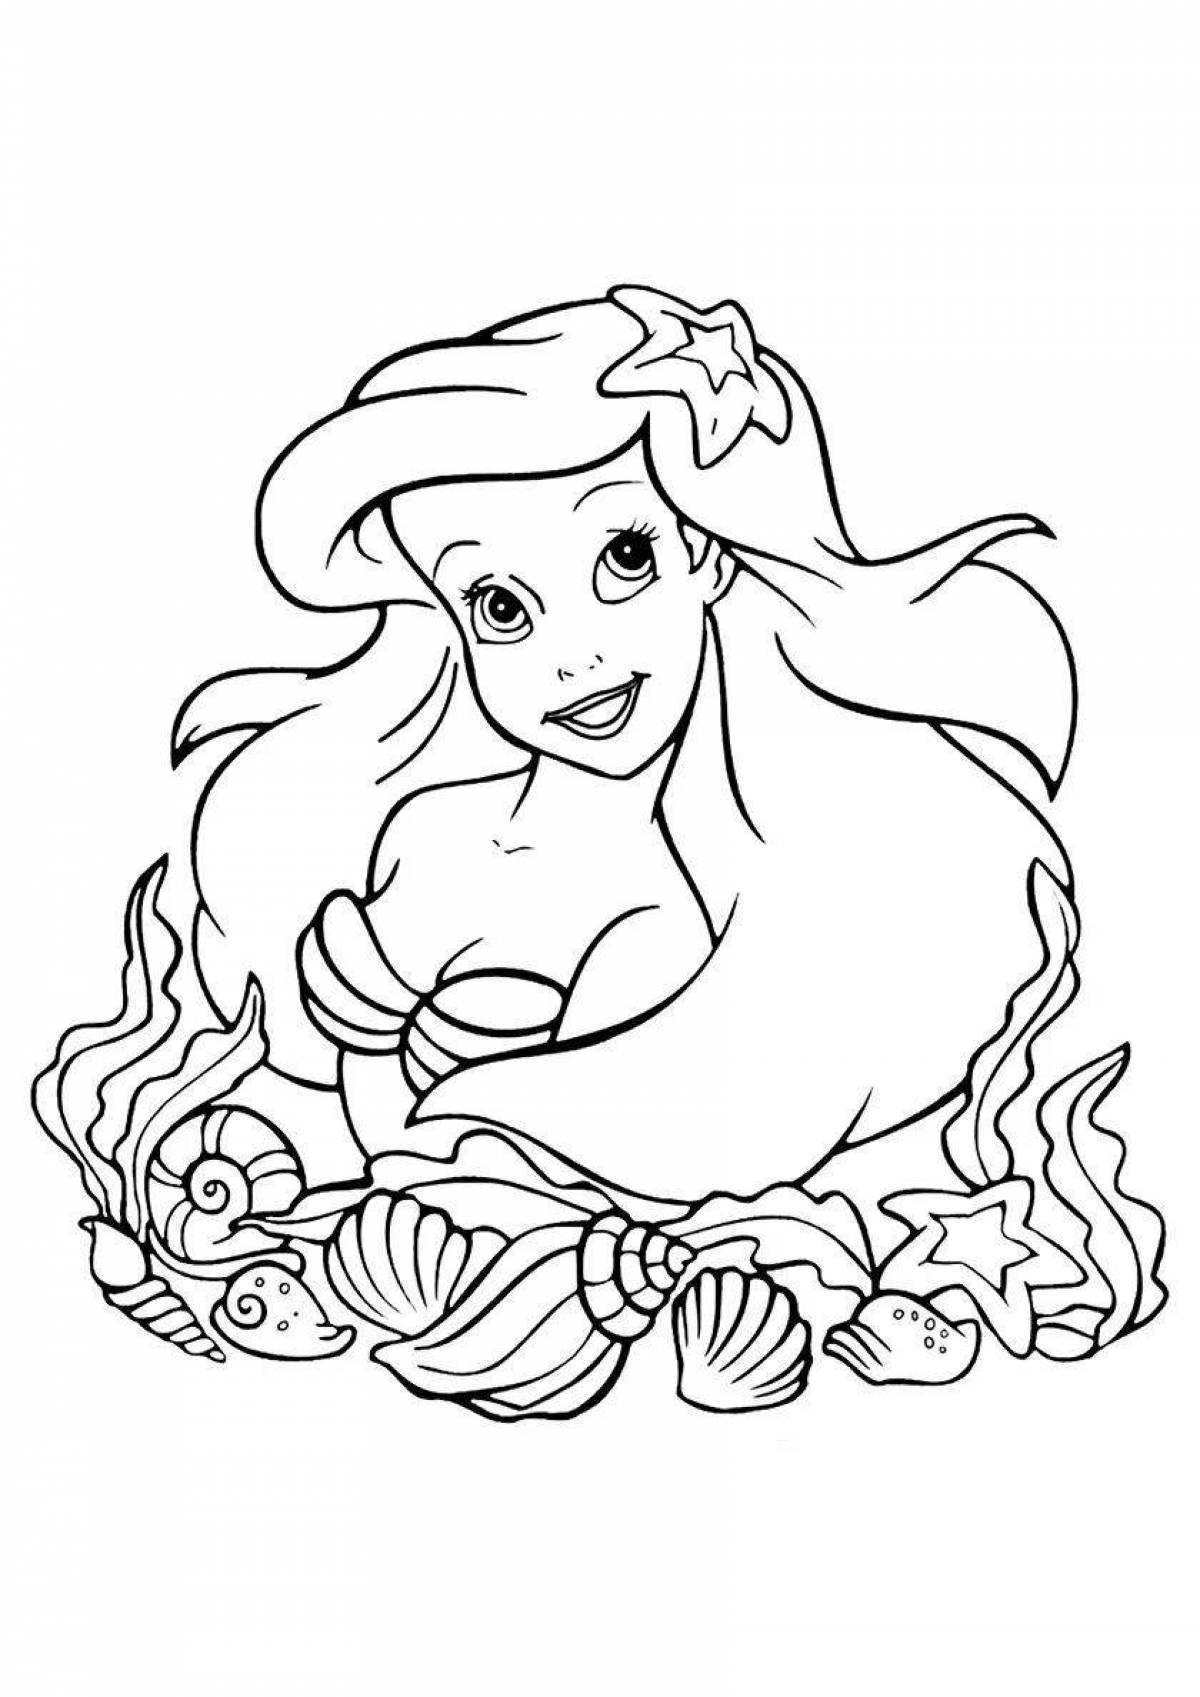 Colorful coloring princess ariel mermaid